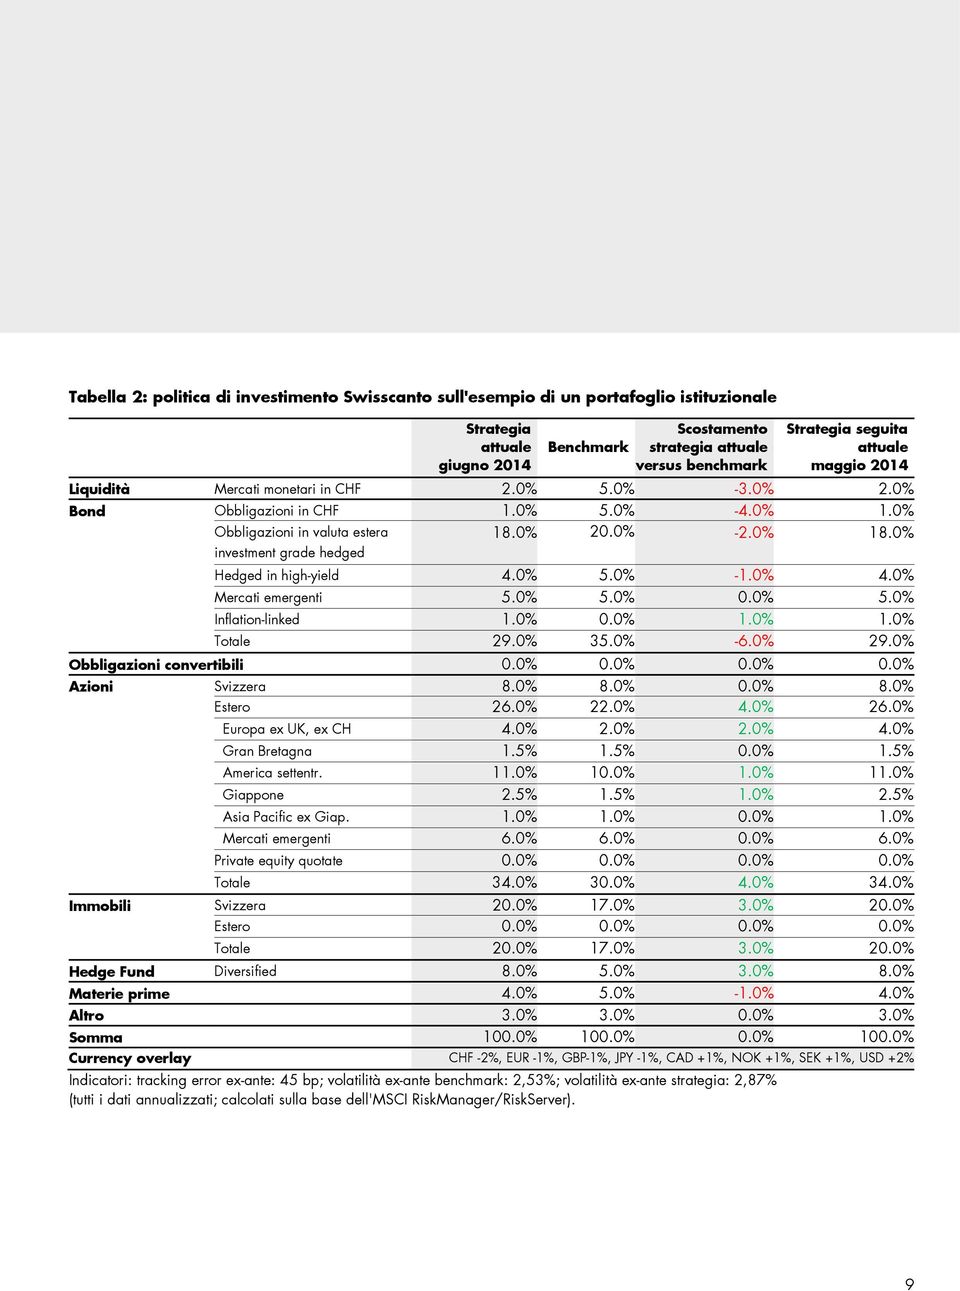 0% Hedged in high-yield 4.0% 5.0% -1.0% 4.0% Mercati emergenti 5.0% 5.0% 0.0% 5.0% Inflation-linked 1.0% 0.0% 1.0% 1.0% Totale 9.0% 35.0% -6.0% 9.0% Obbligazioni convertibili 0.0% 0.0% 0.0% 0.0% Azioni Svizzera 8.